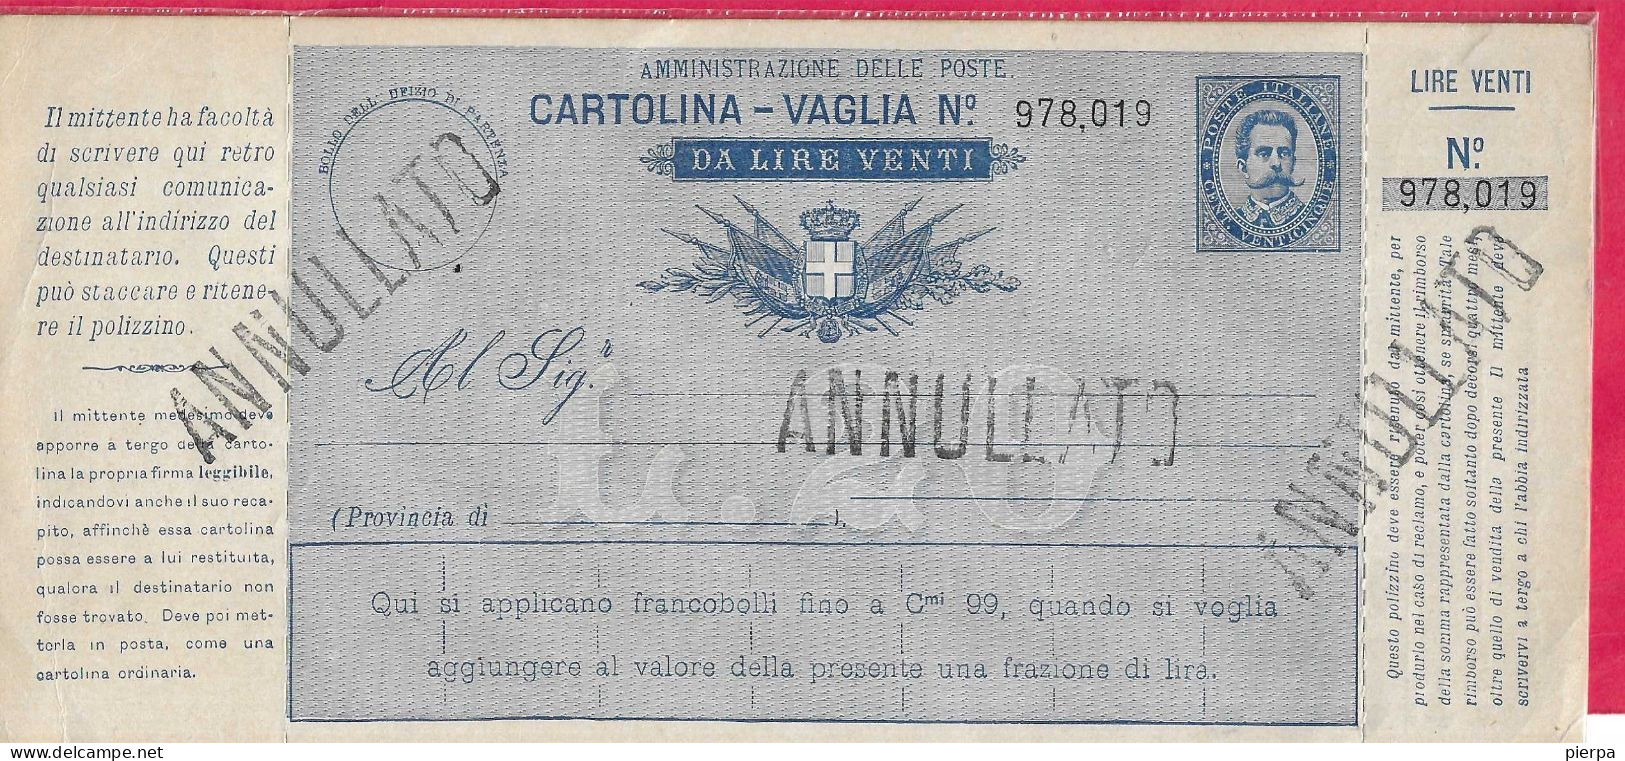 INTERO CARTOLINA-VAGLIA UMBERTO C.25 DA LIRE 20 (CAT. INT. 9A)  NUOVA - TIMBRO ANNULLATO - Ganzsachen